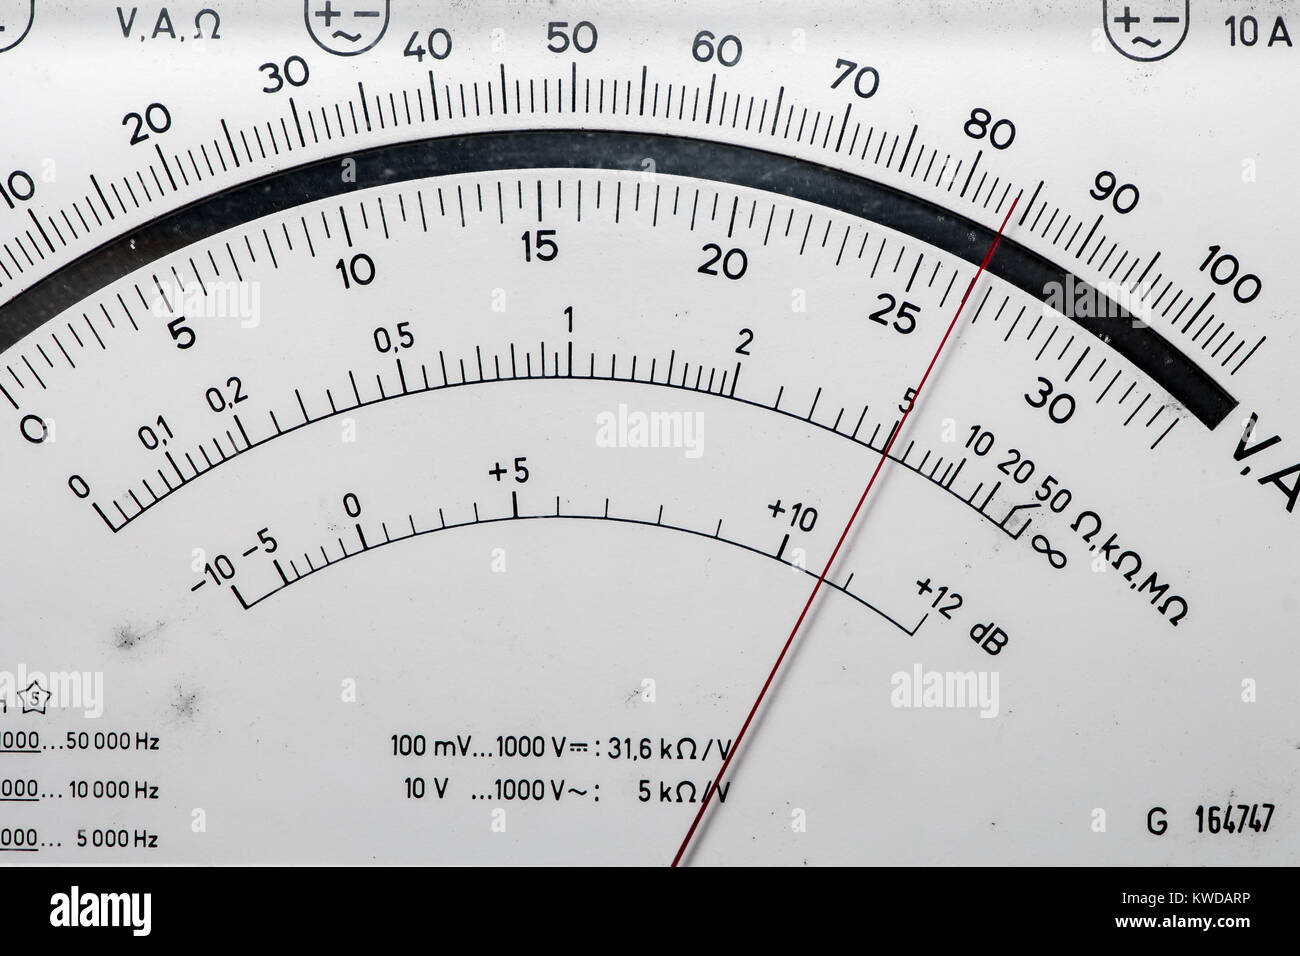 Detalle de un voltímetro analógico, puntero y escala Fotografía de stock -  Alamy